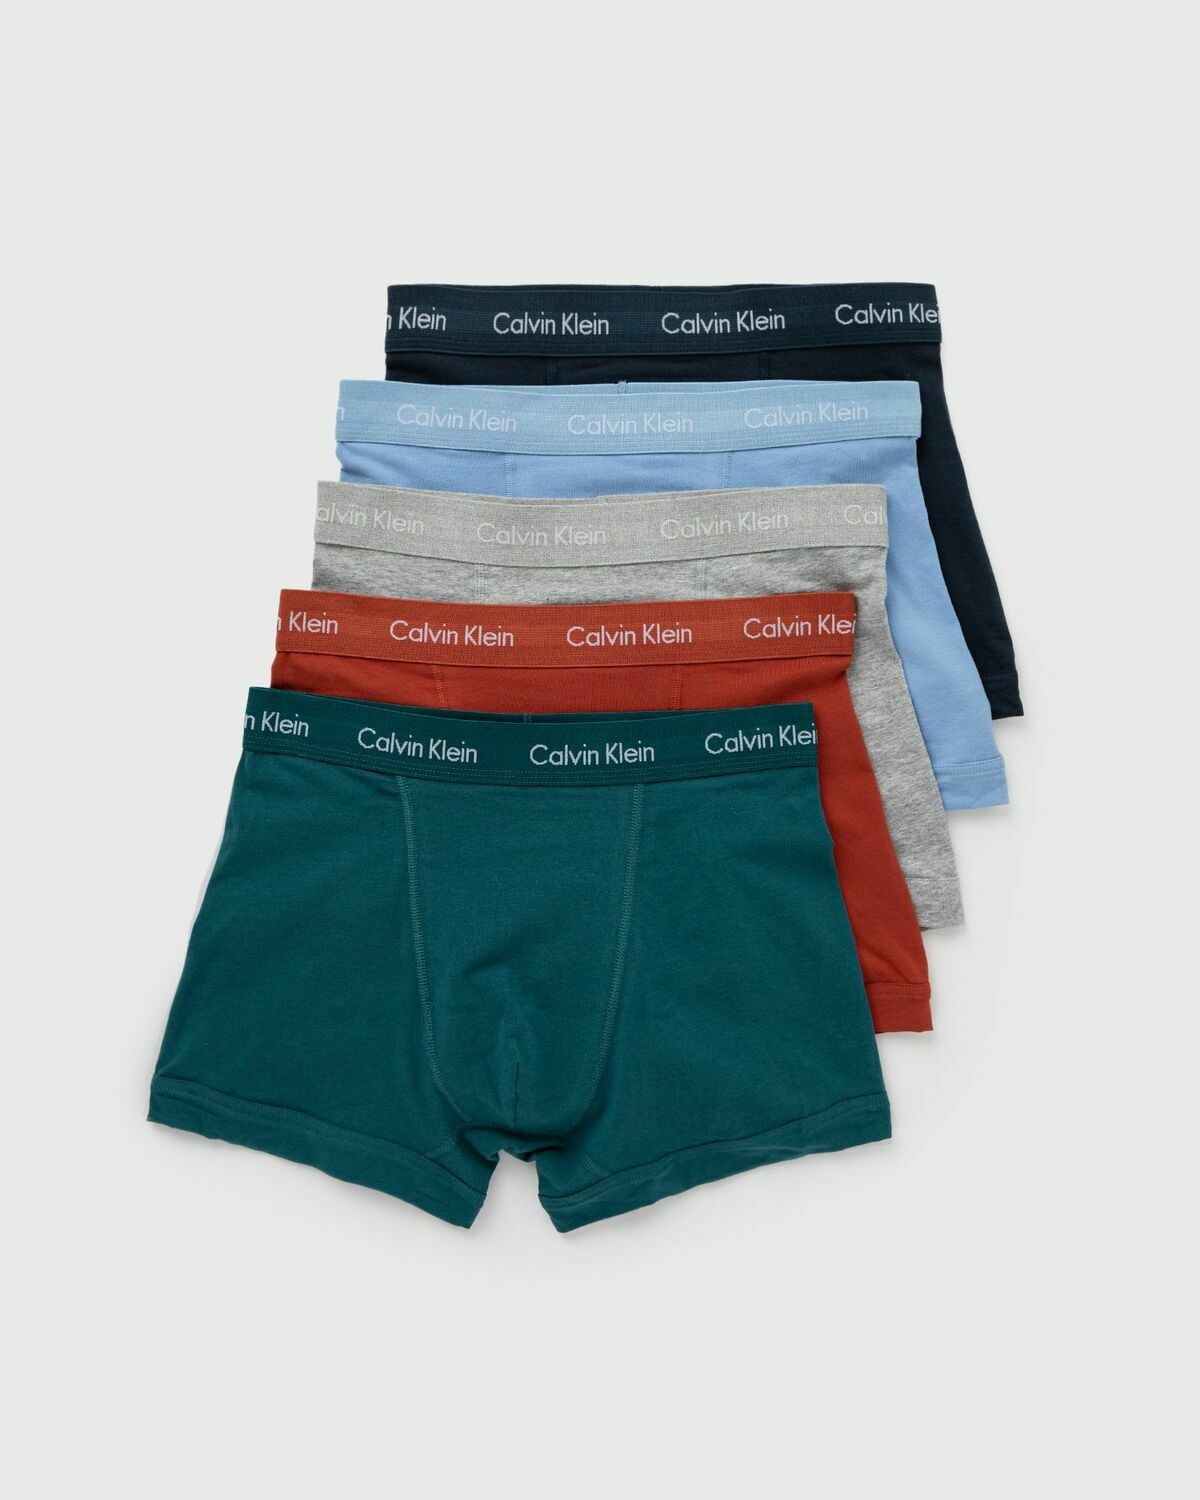 Calvin Klein Underwear Cotton Stretch Trunk 5 Pack Multi - Mens